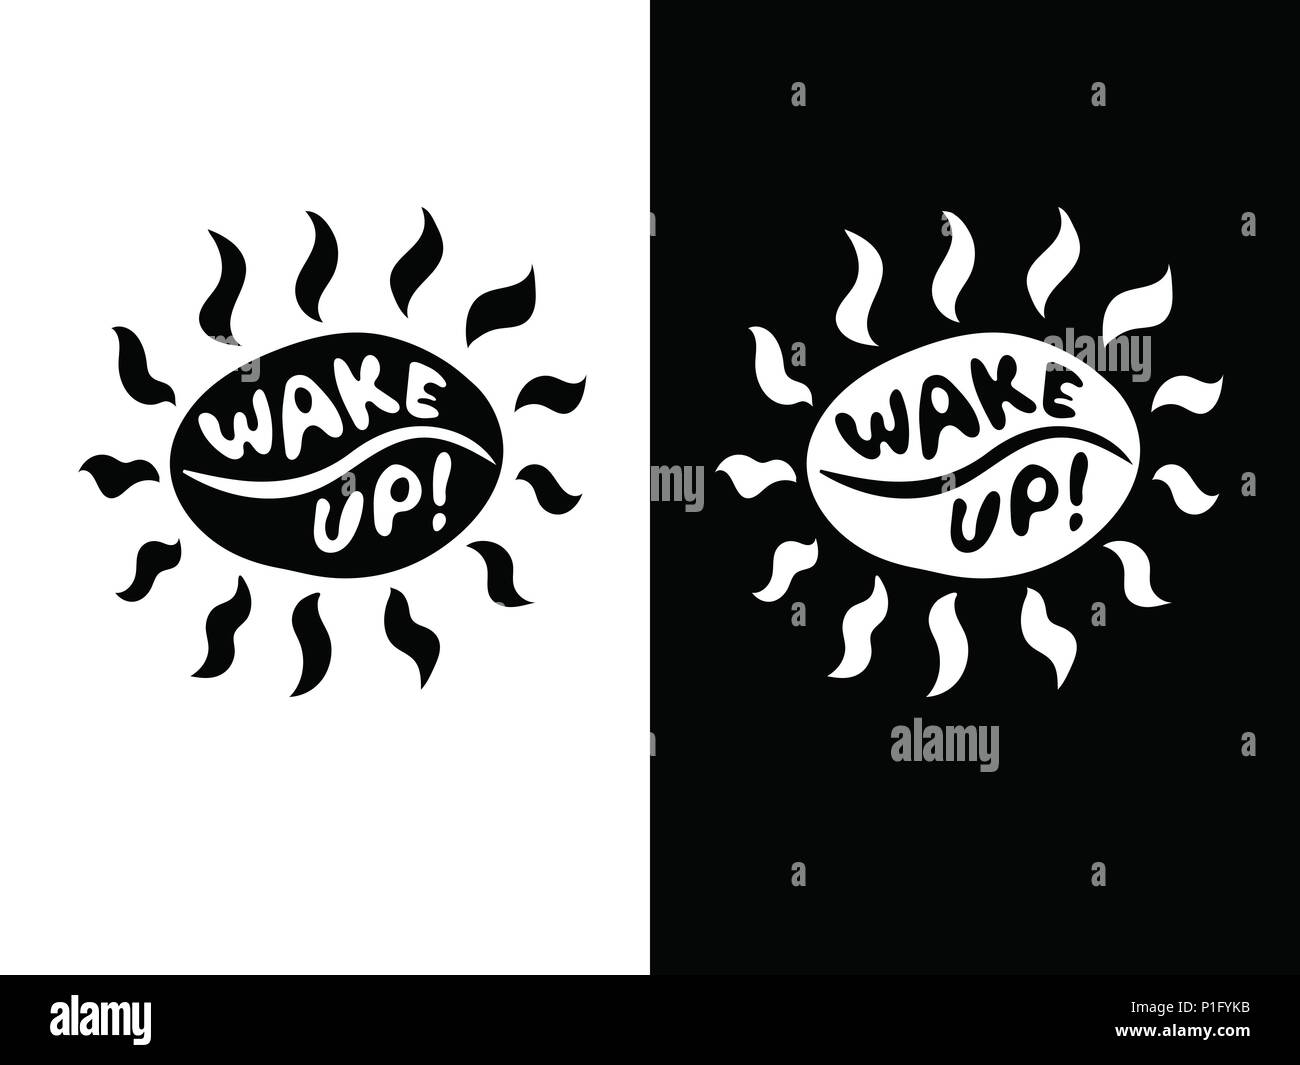 Divertente in bianco e nero chicco di caffè sun con icona di travi con caratteri Wake up! Illustrazione Vettoriale